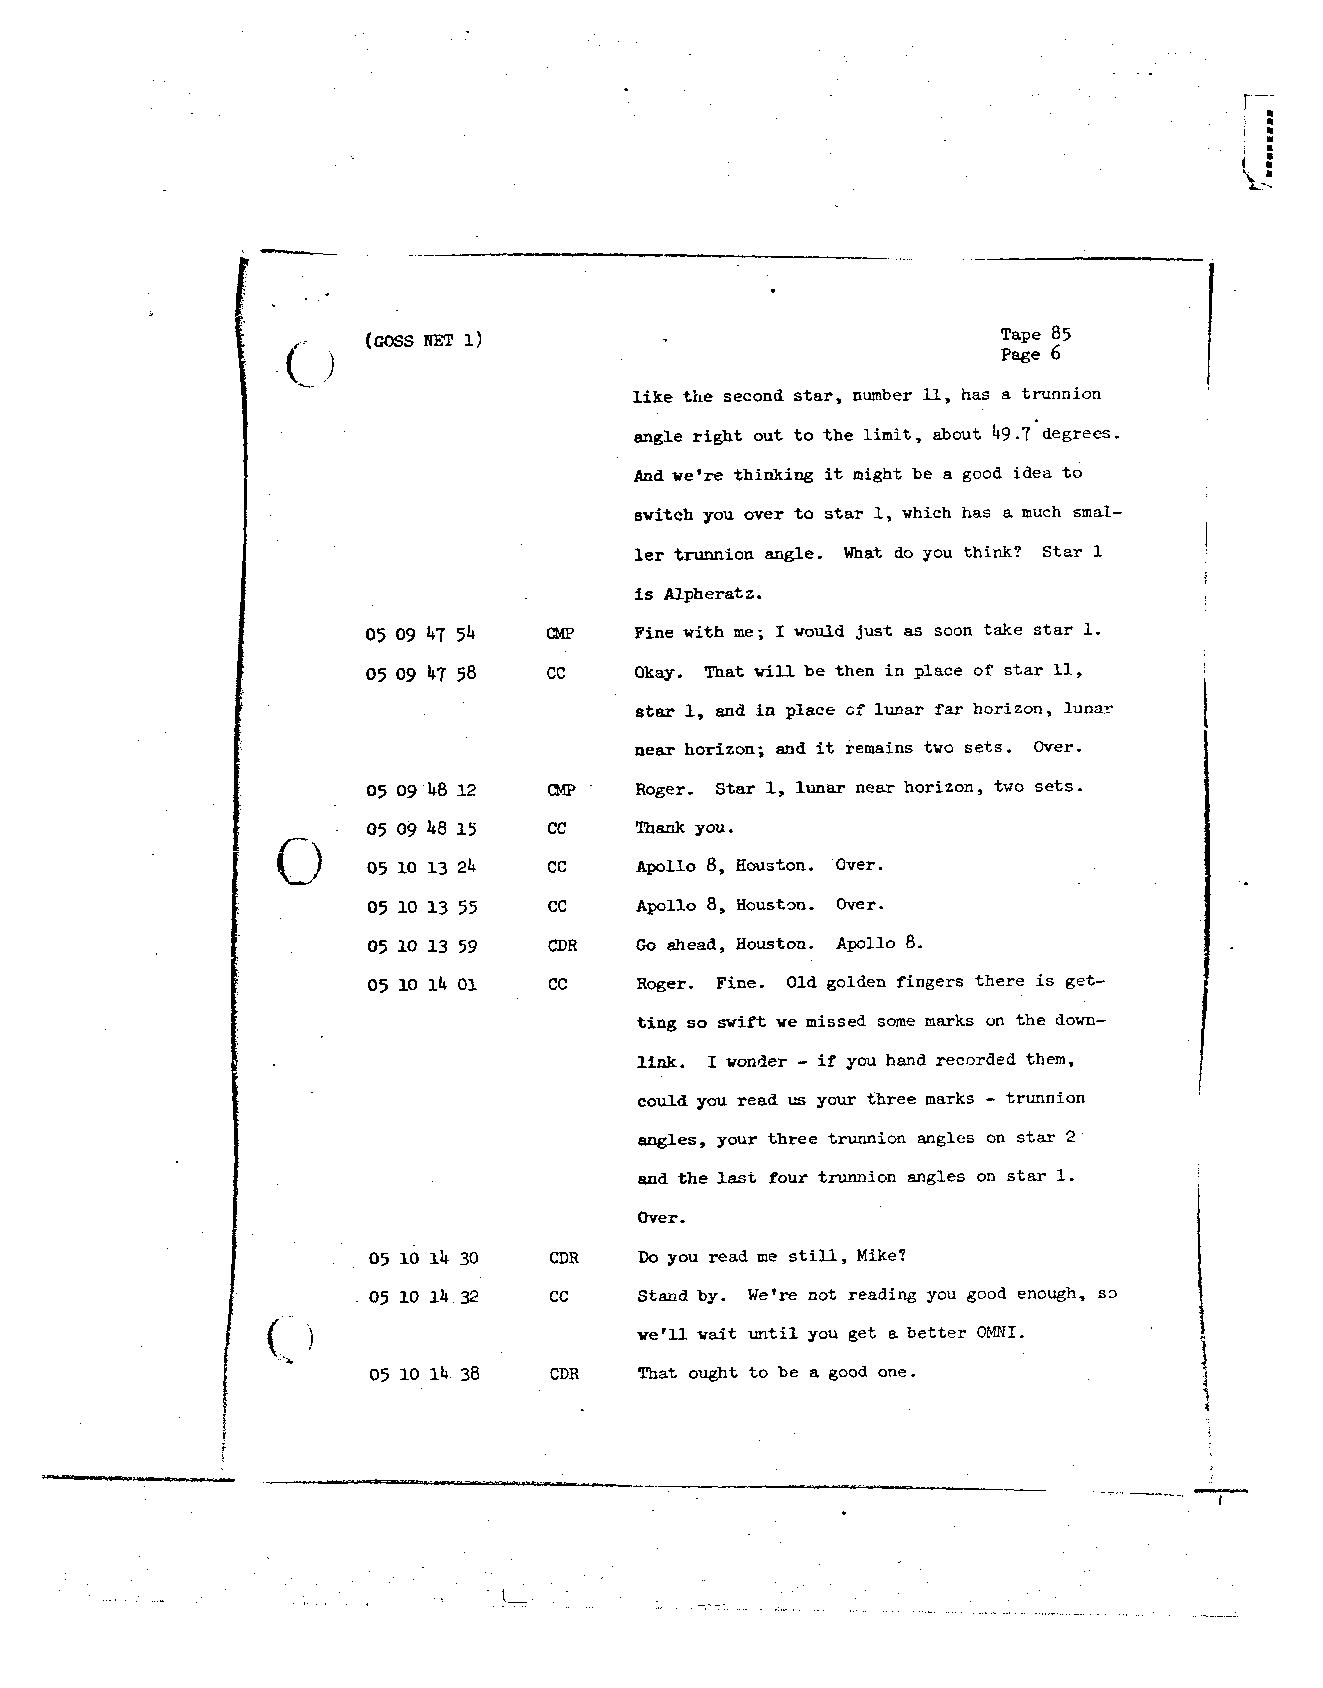 Page 707 of Apollo 8’s original transcript